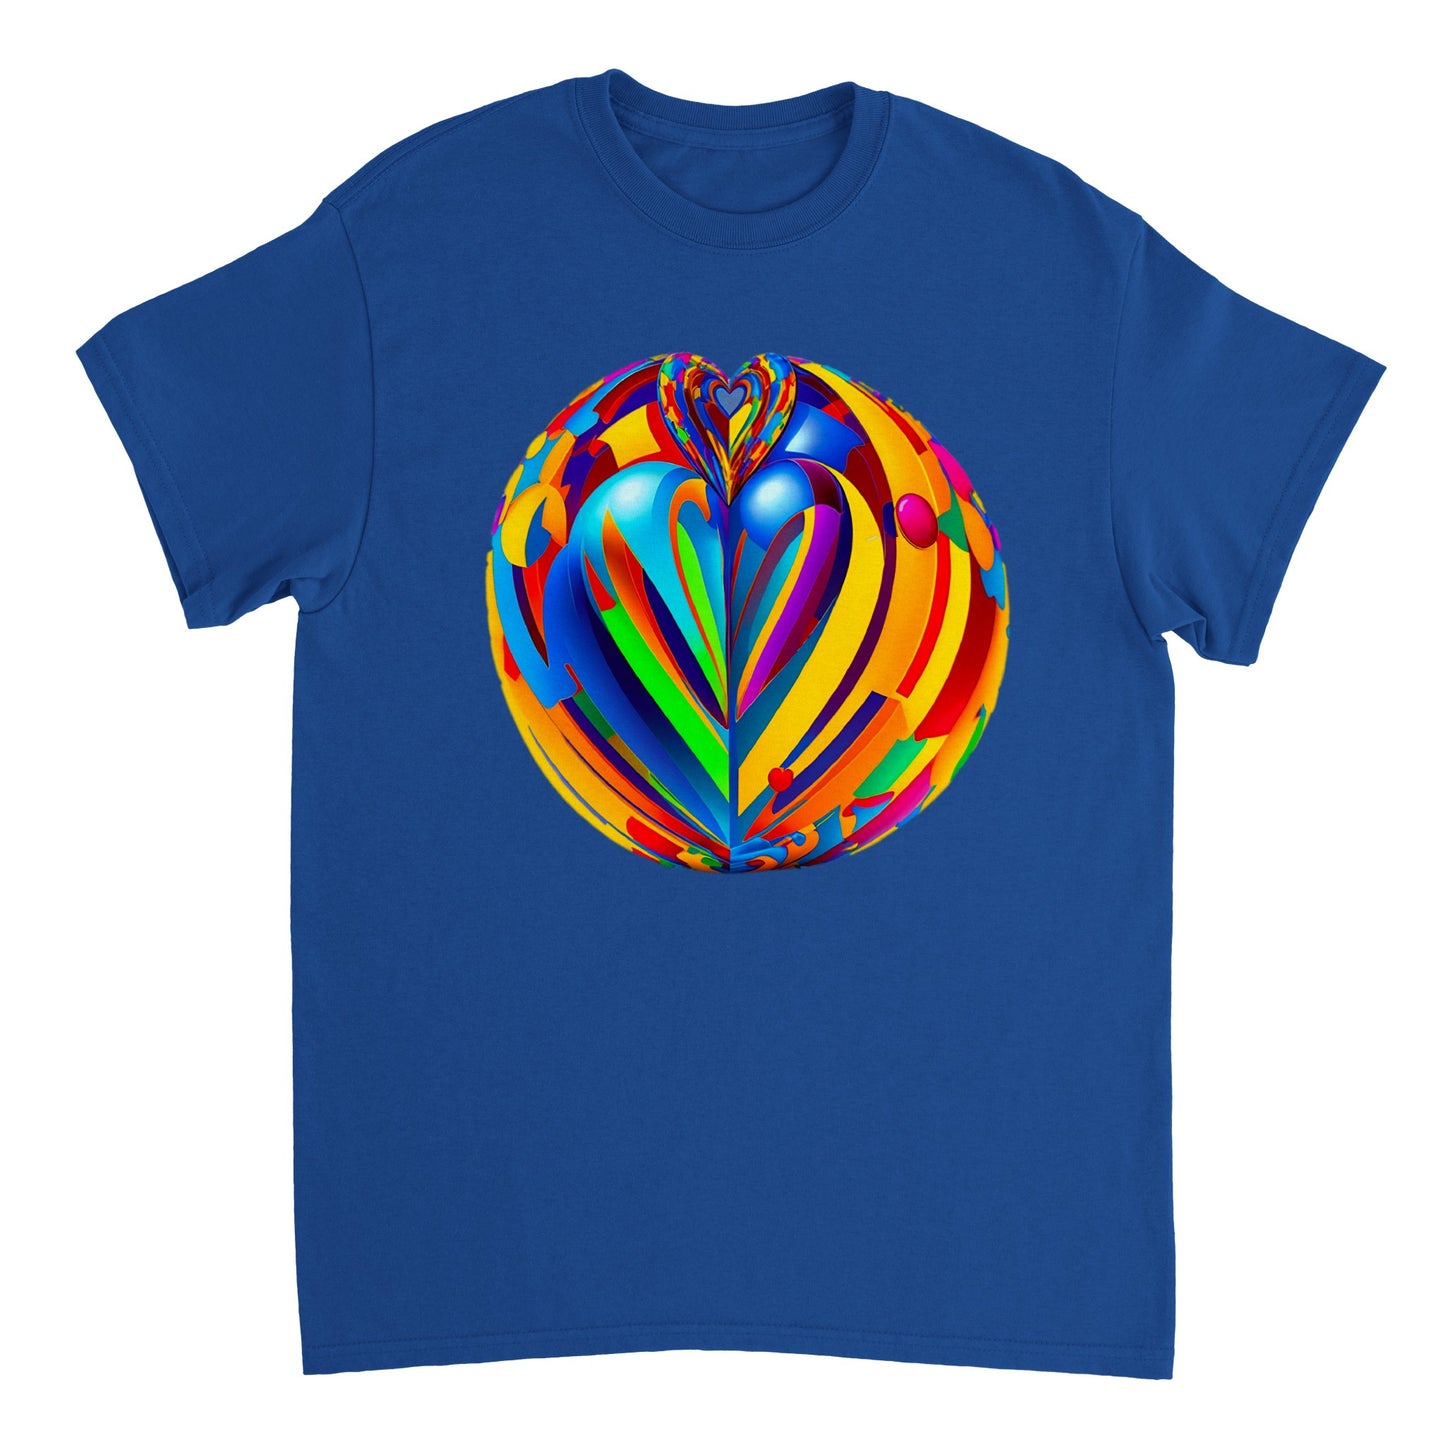 Love Heart - Heavyweight Unisex Crewneck T-shirt 90